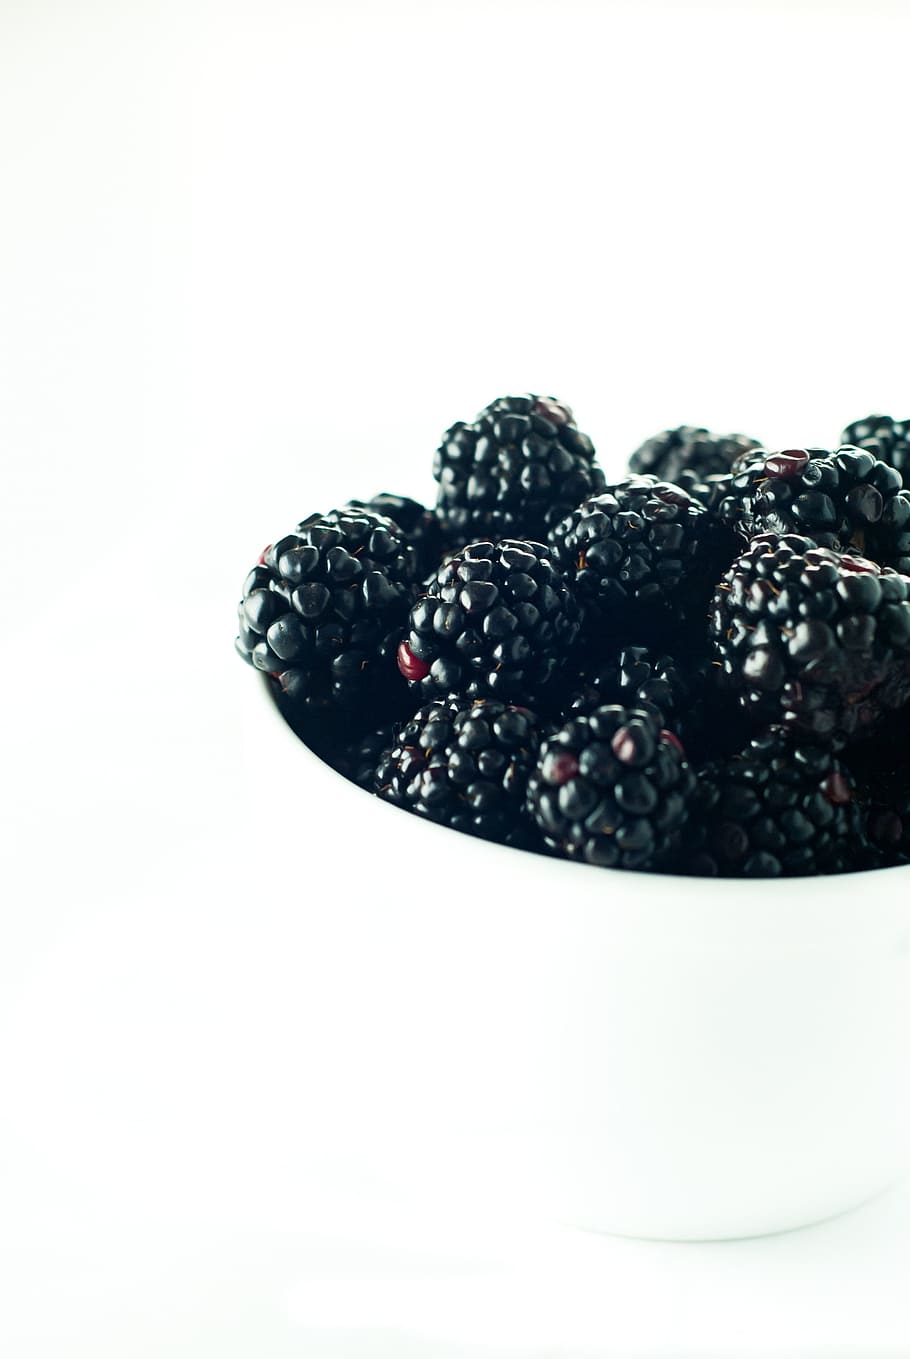 blackberry, beri, hitam, mangkuk, segar, putih, makanan, makanan sehat, makanan dan minuman, buah berry